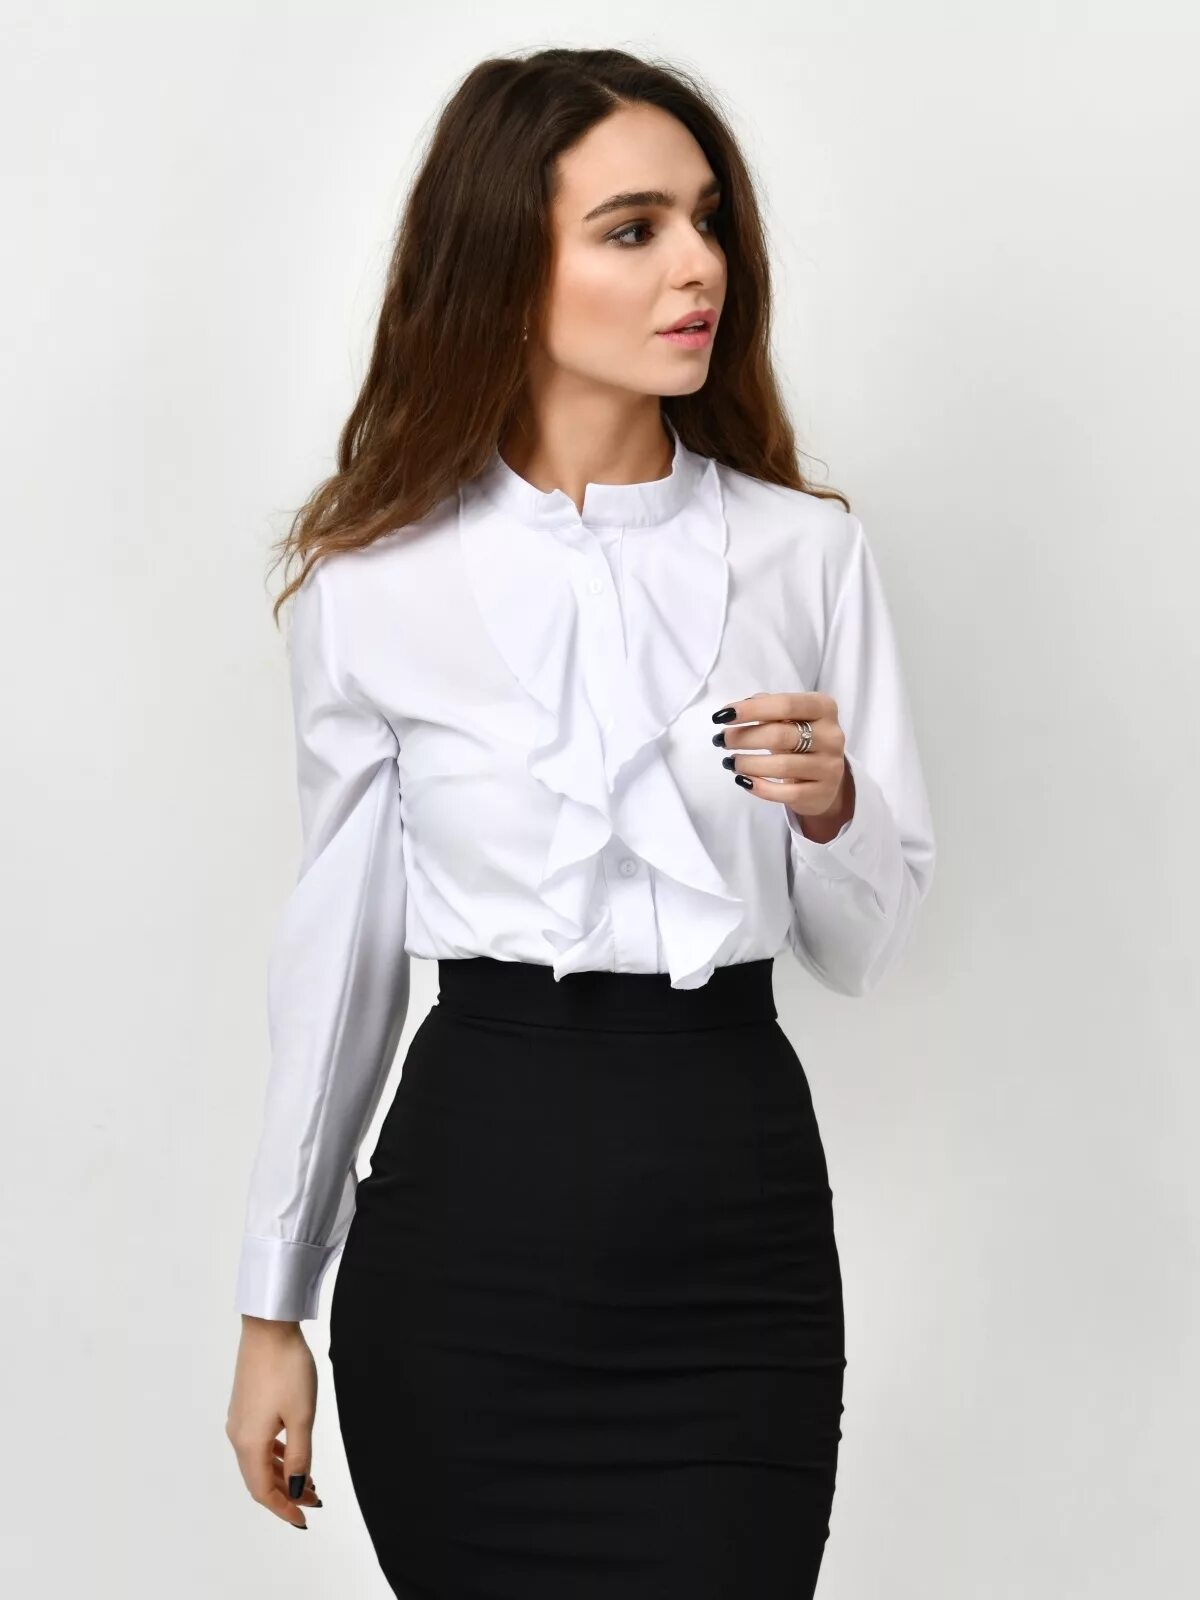 Офисная блузка купить. Белая блузка. Блузка офисная женская. Красивые блузки для девушек. Белая блузка женская.